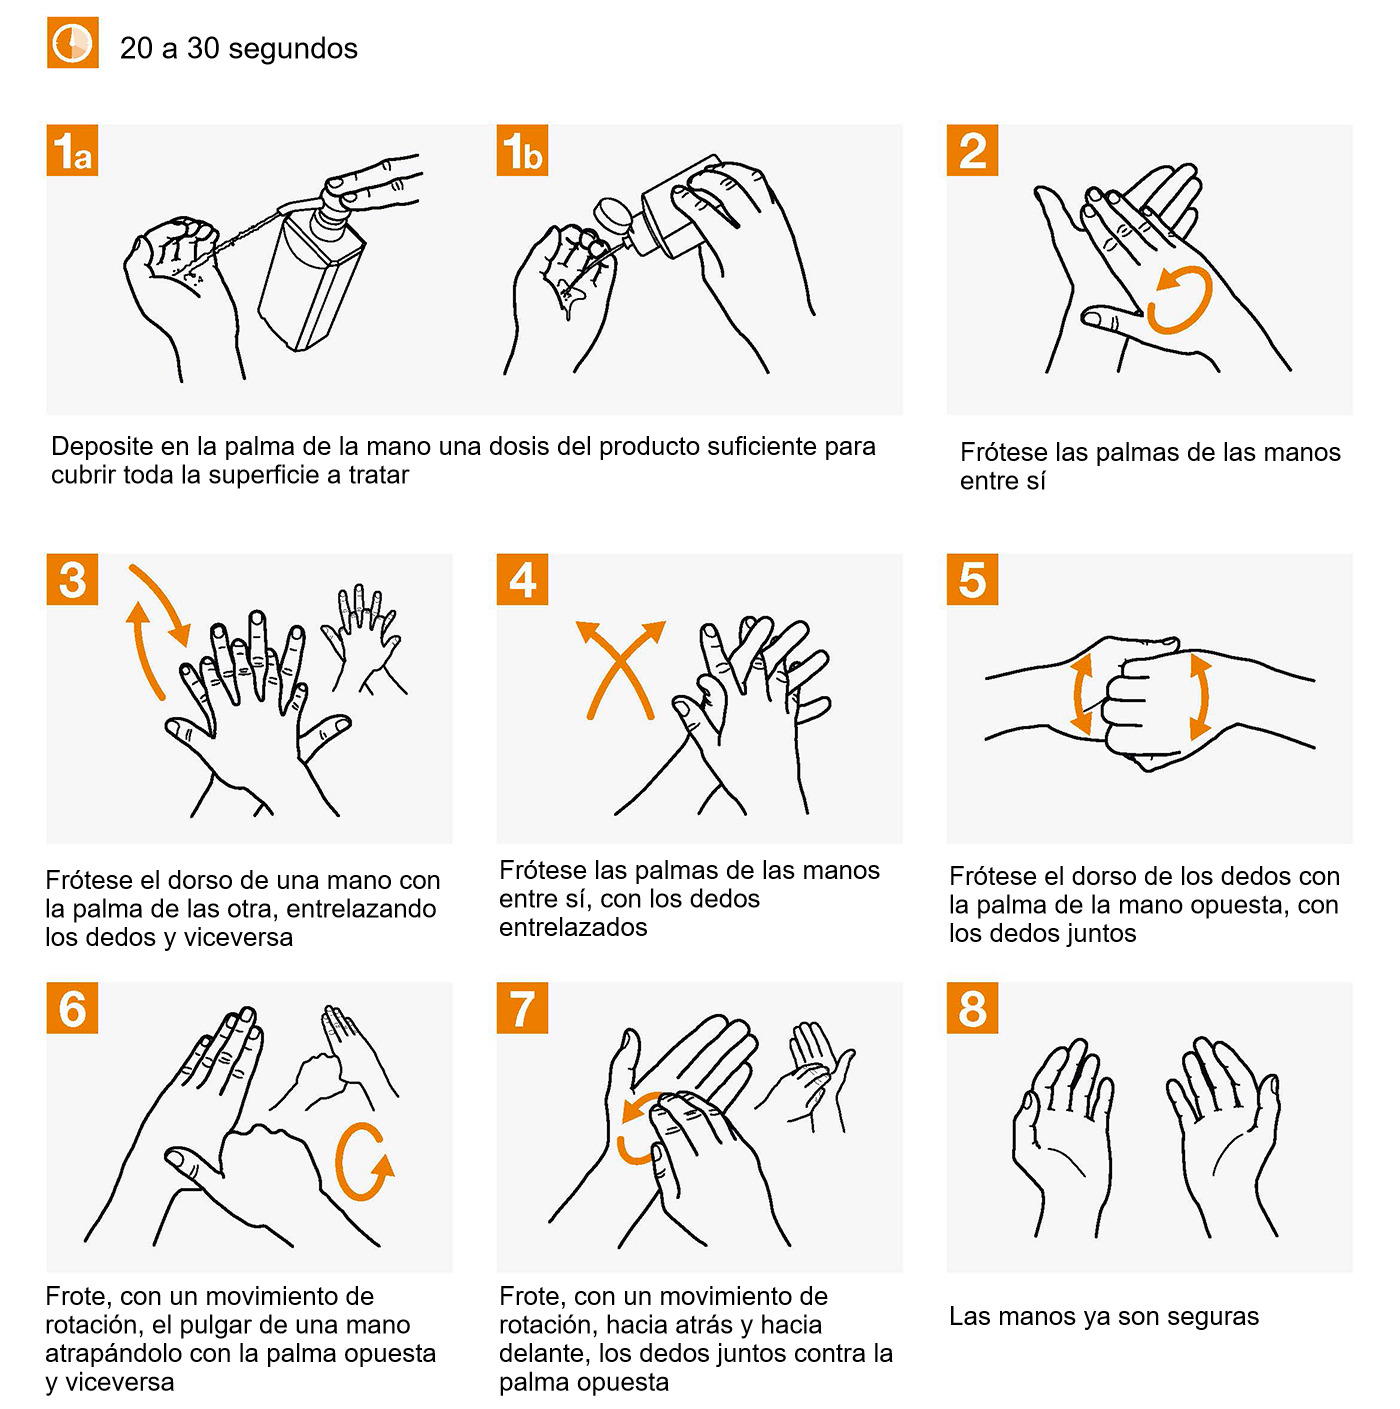 Técnica de higiene de las manos con preparaciones alcohólicas